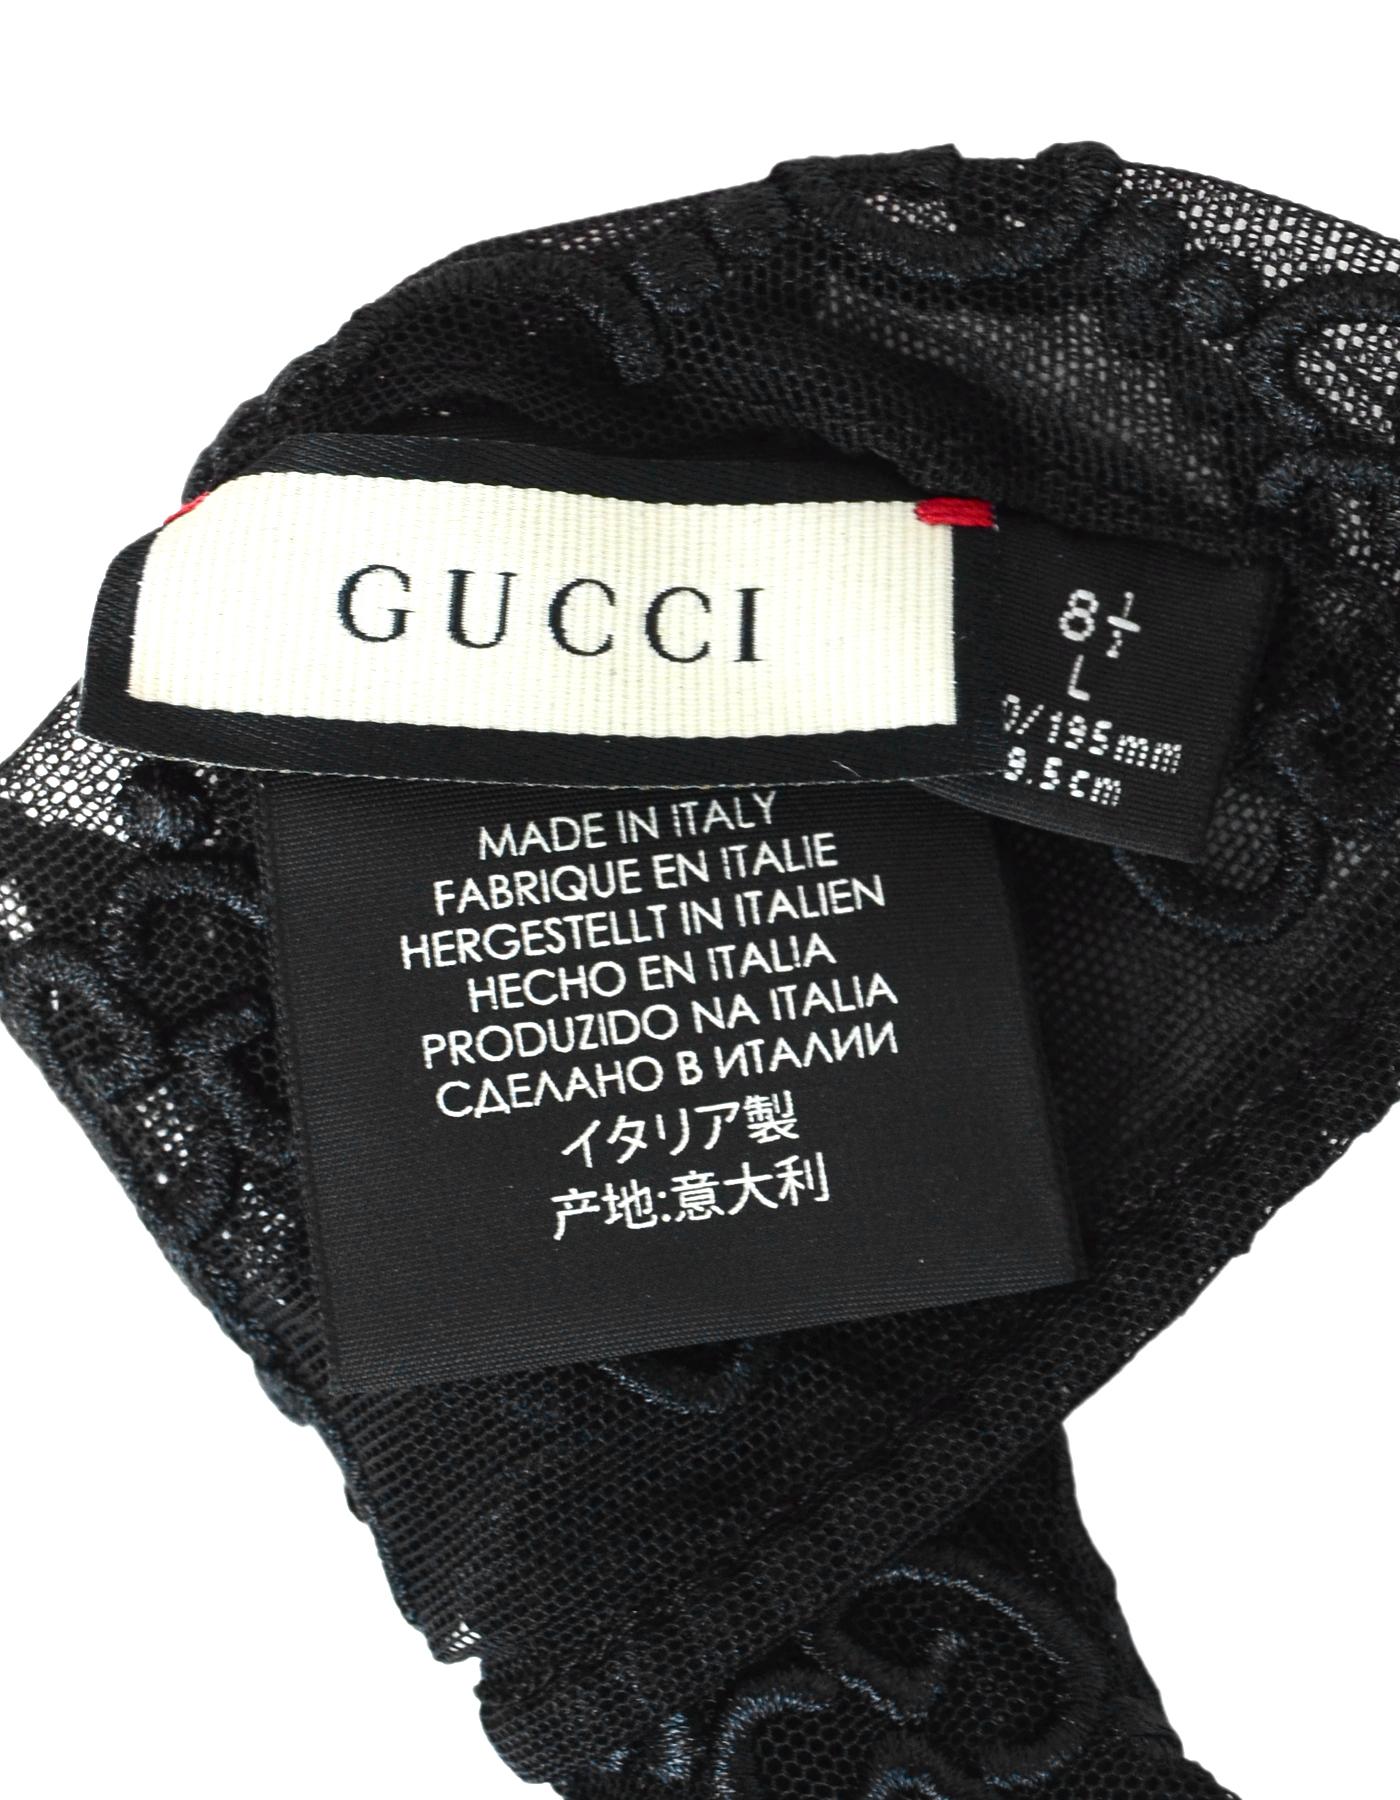 Women's Gucci NWT Black Tulle Gloves W/ GG Monogram Motif Sz 8.5 (L)